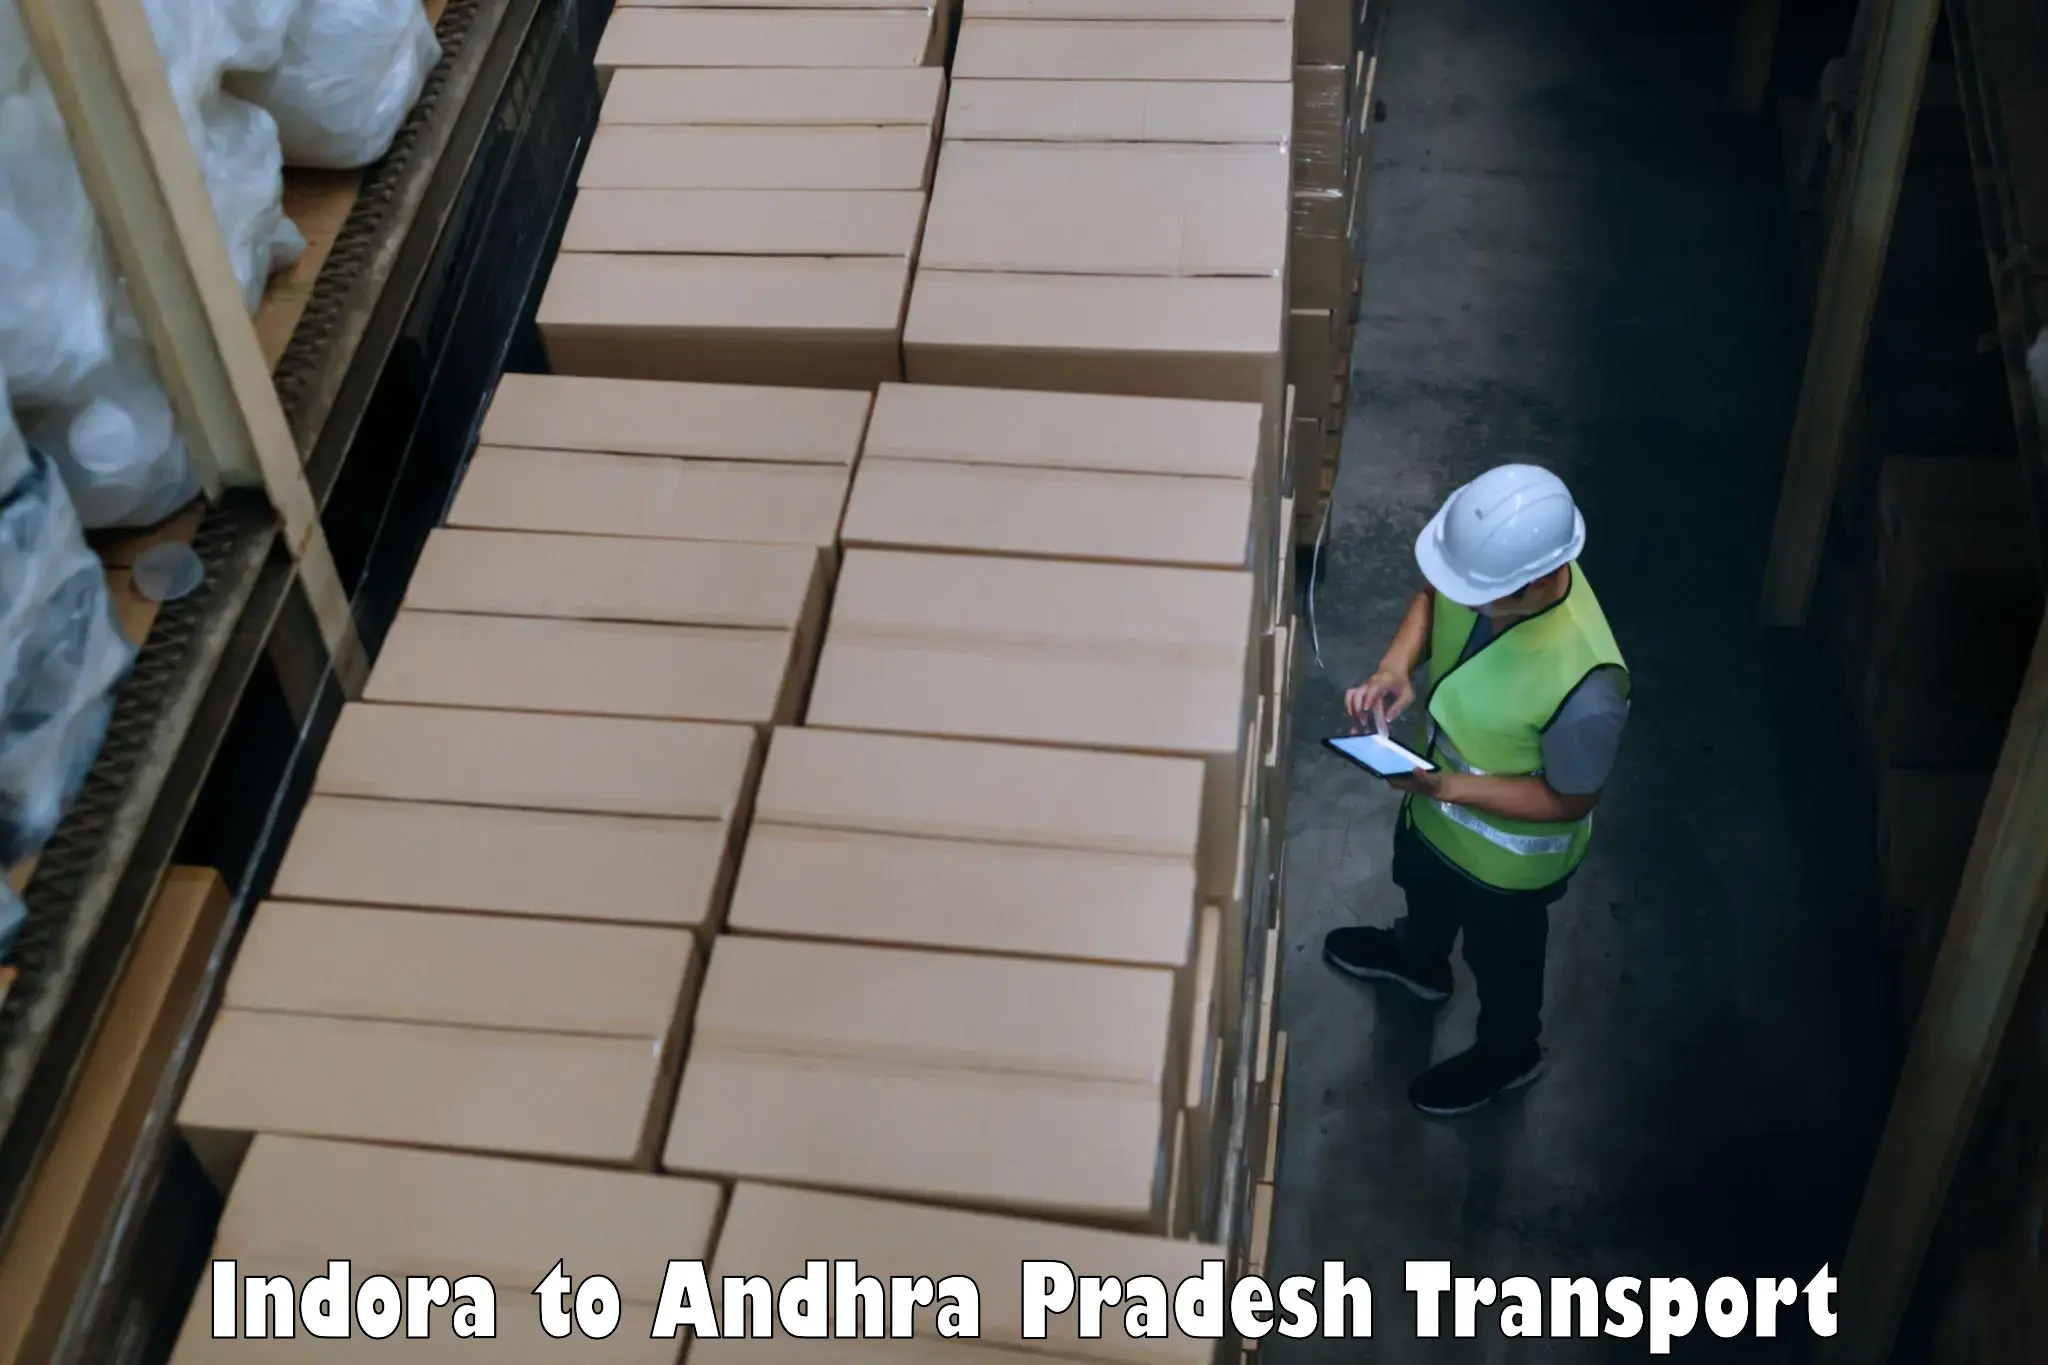 Transport in sharing Indora to Malikipuram